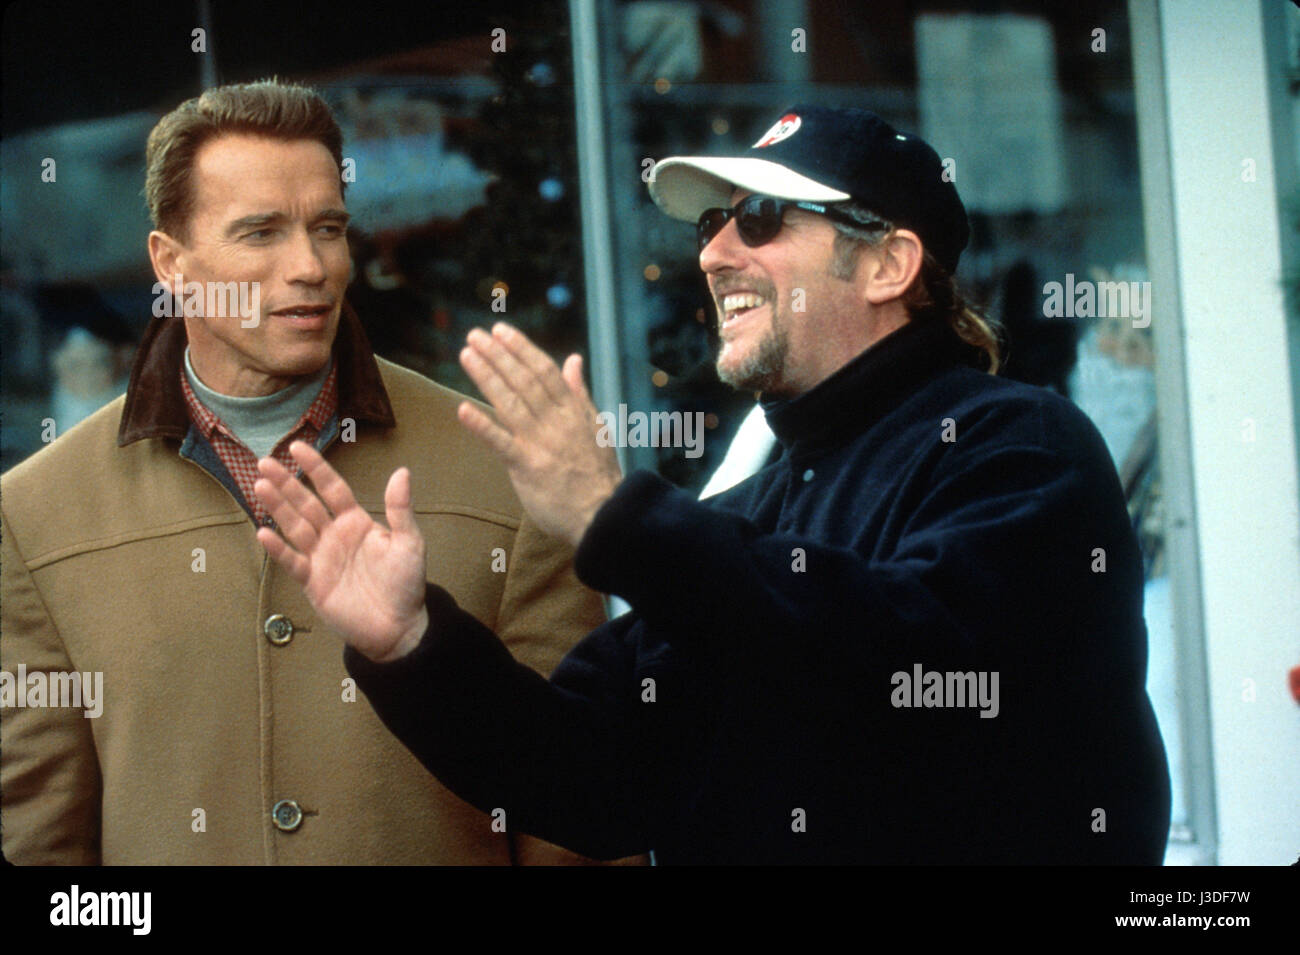 Brian Levant Brian Levant Director: Brian Levant avec Arnold Schwarzenegger sur le tournage / on the set du film La Course aux jouets, Jingle All the Way  Year: 1996 USA Stock Photo